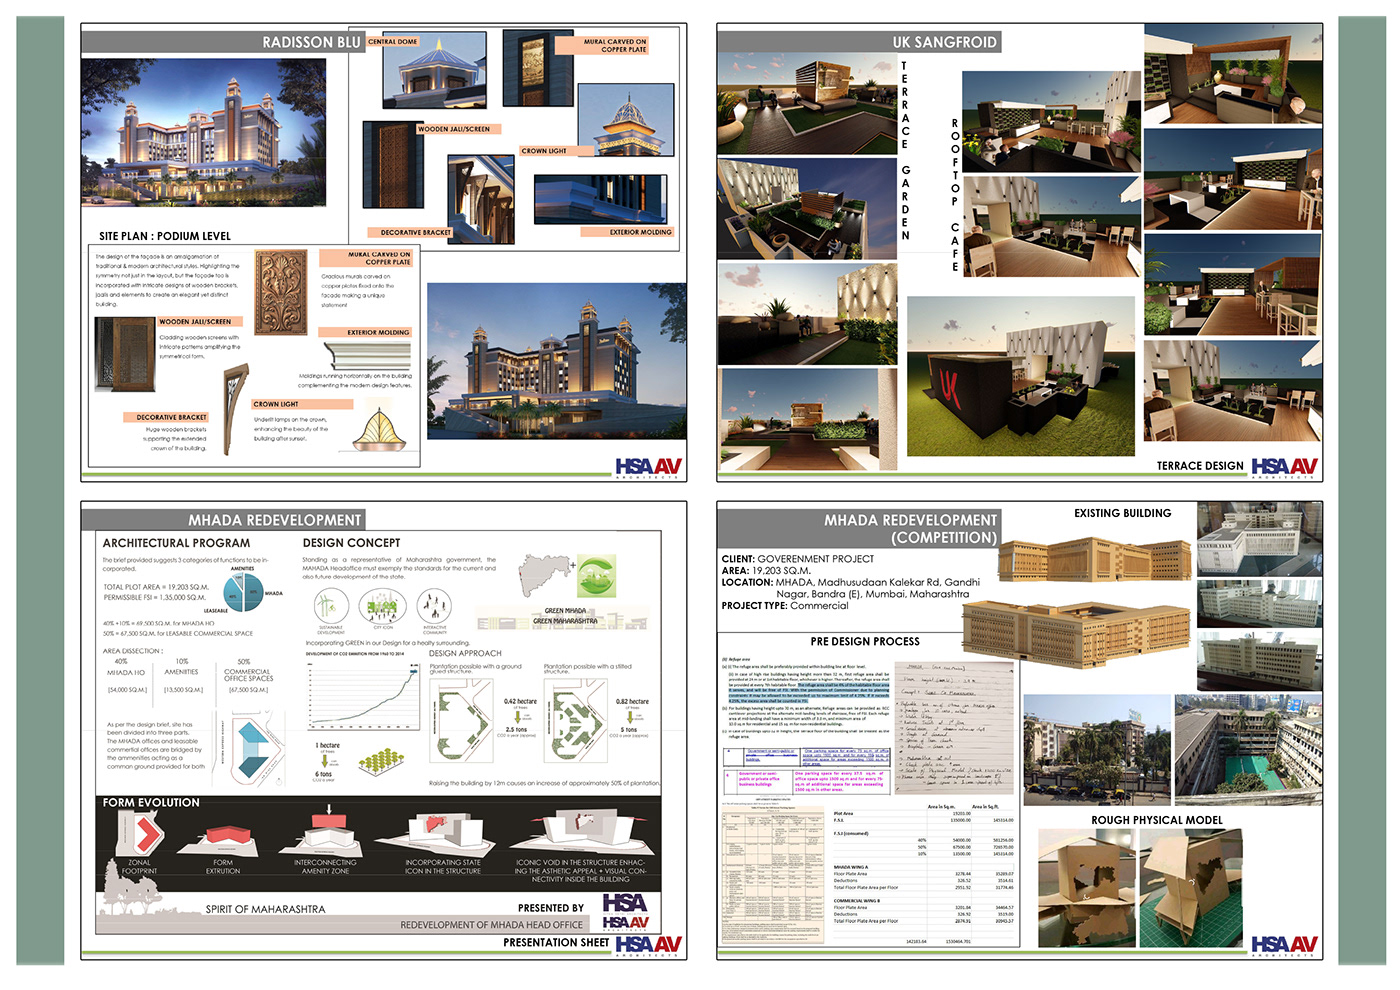 architecture design designer Experience Interior portfolio Resume Space 